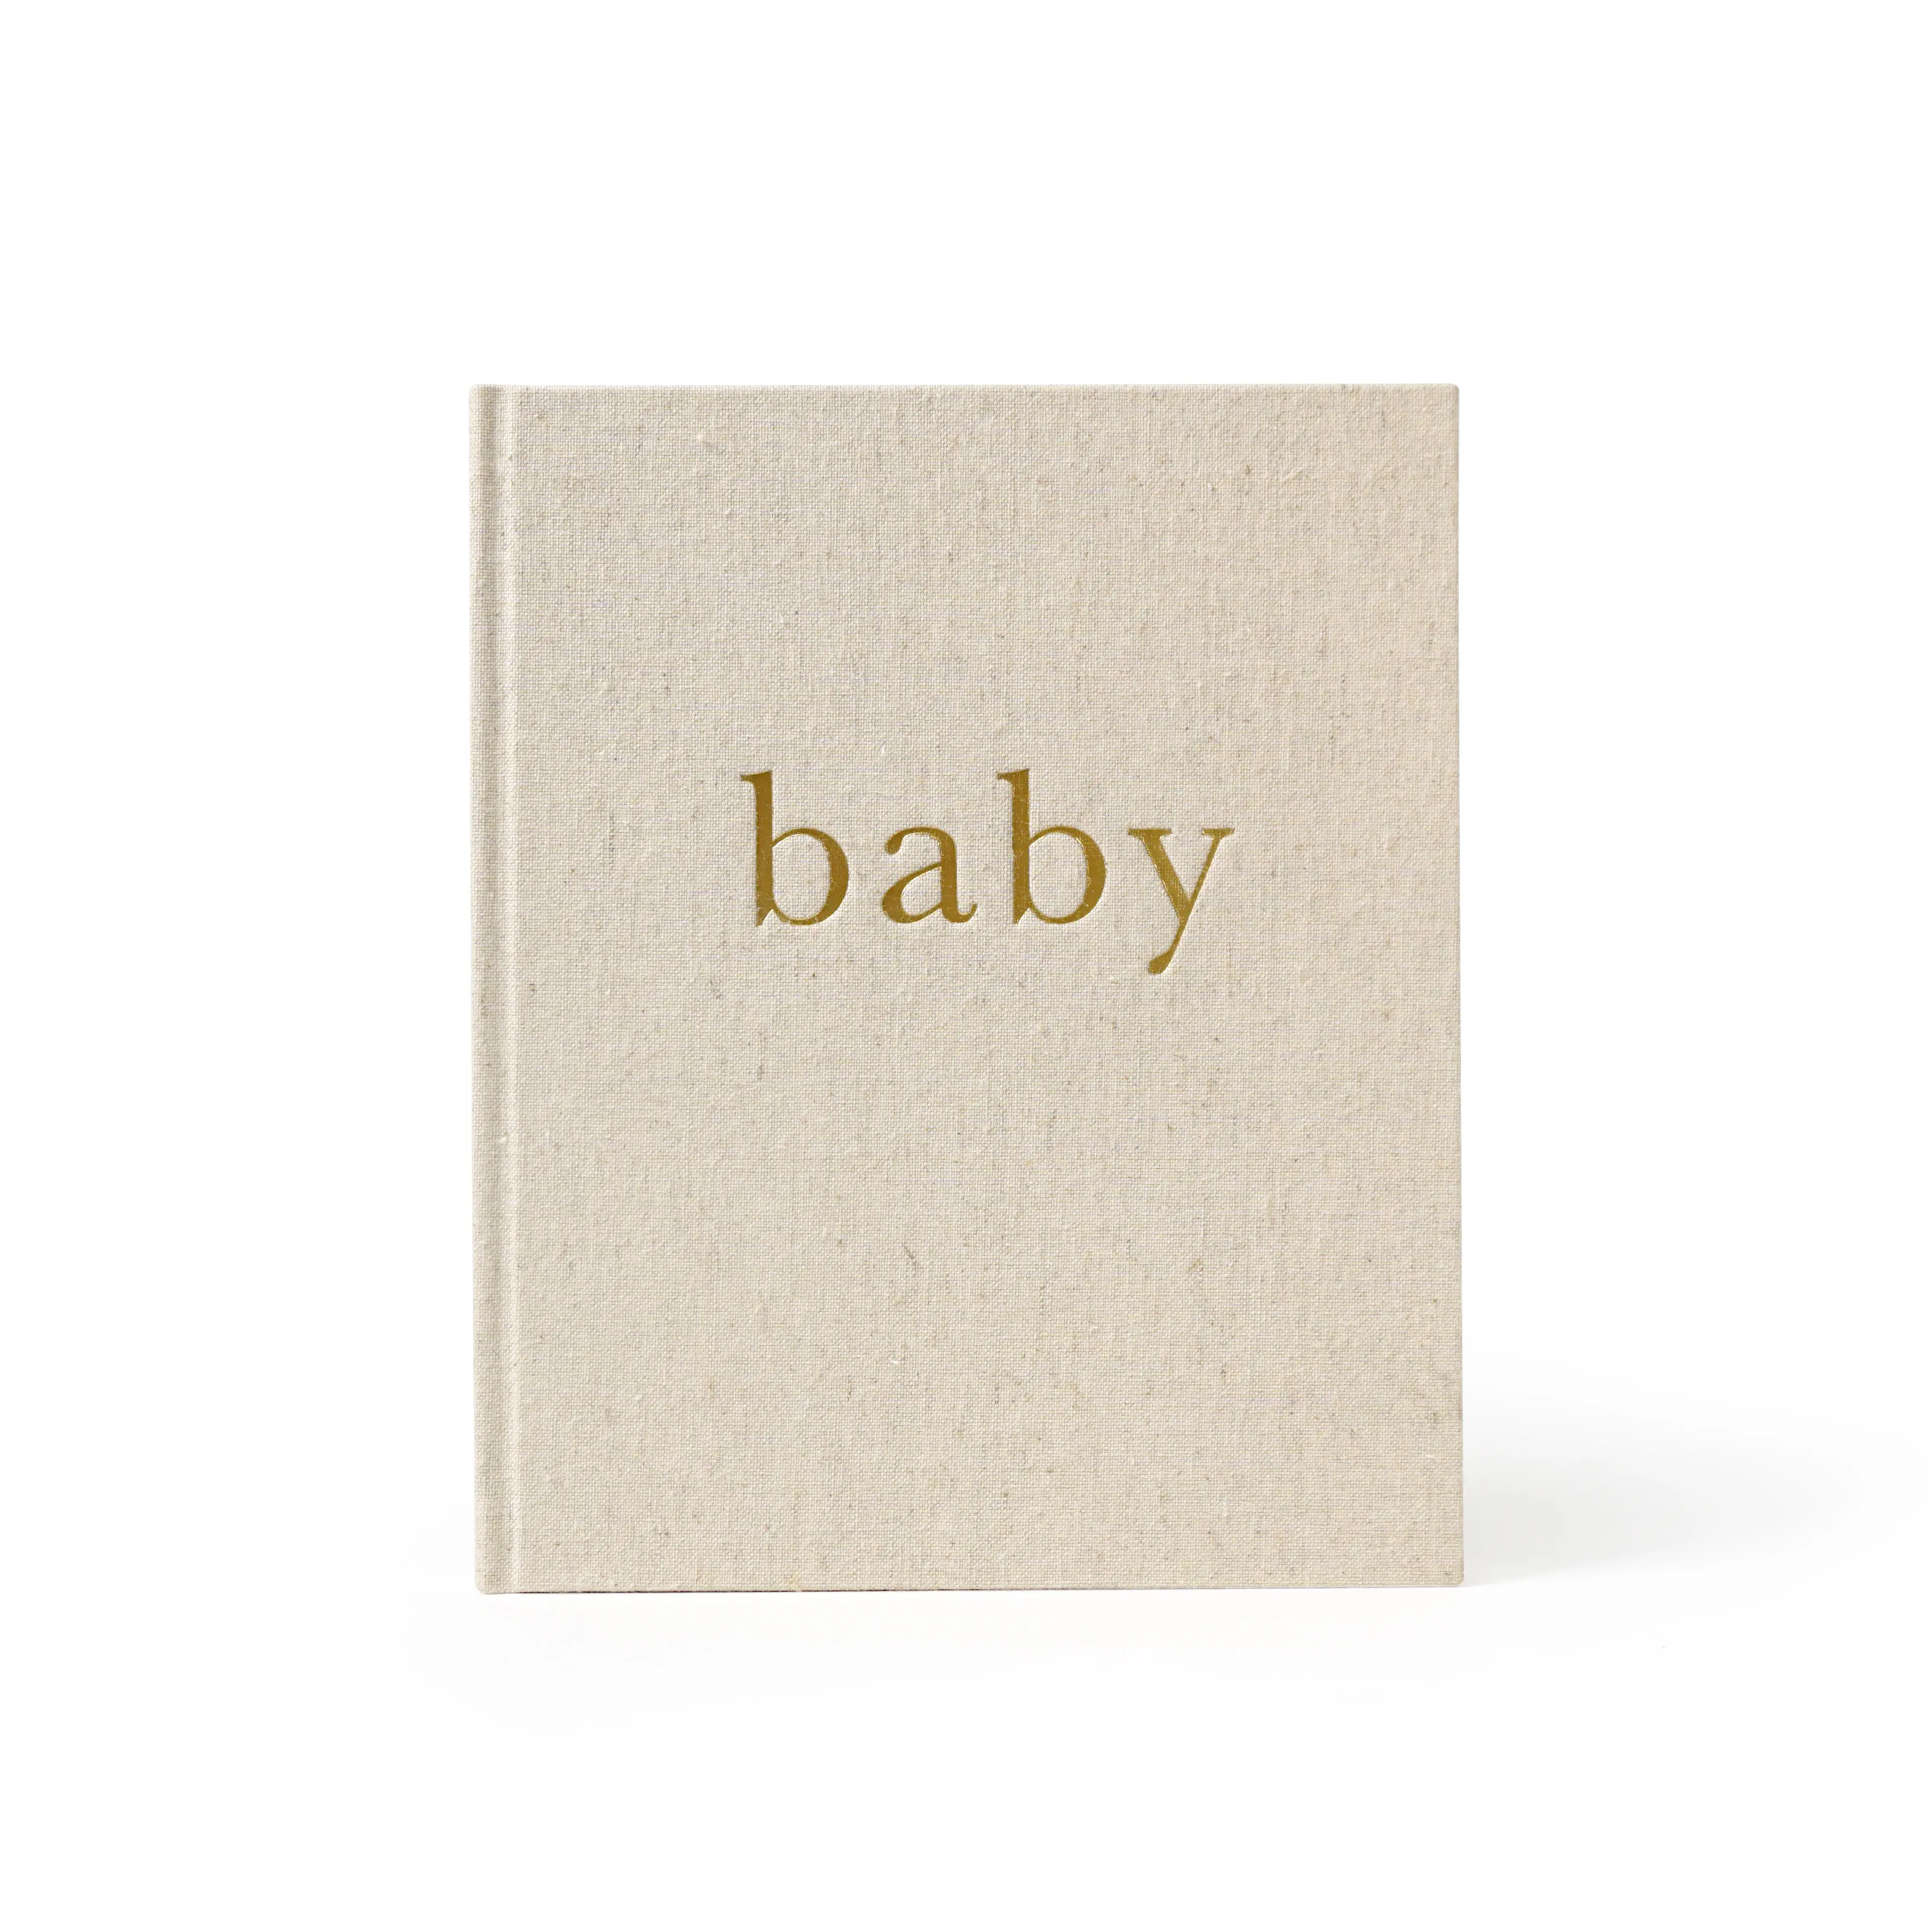 Libro de registro de bebé con impresión personalizada, cubierta de lino, memoria de embarazo, hito, tapa dura, recuerdo, Bloc de notas, cuaderno, diario para bebés